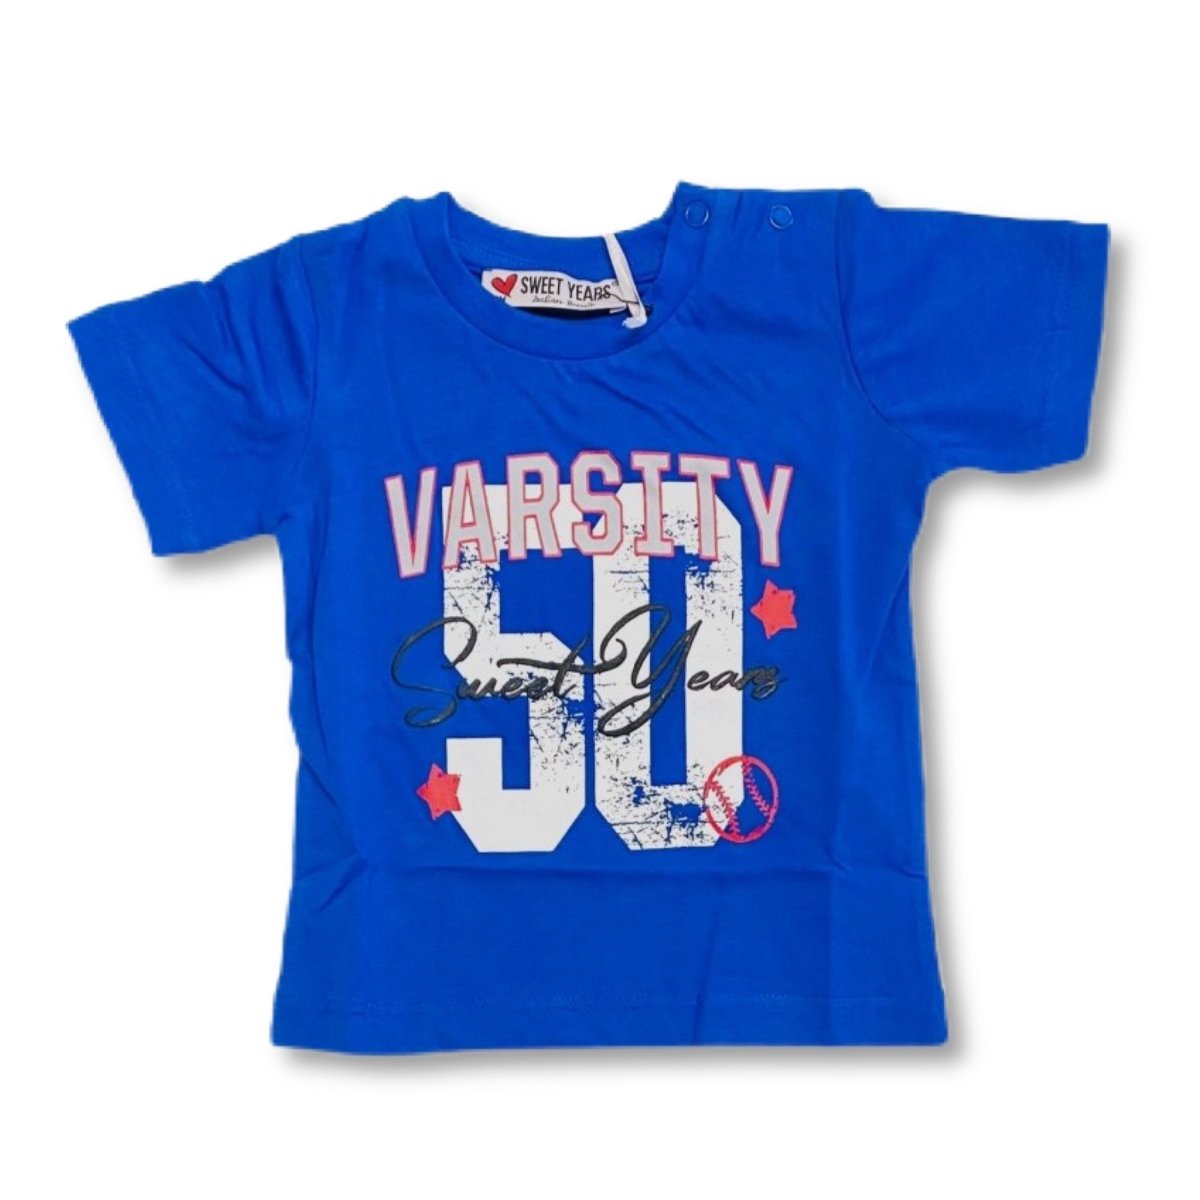 T-shirt Neonato SWEET YEARS - Mstore016 - t-shirt neonato - Sweet Years